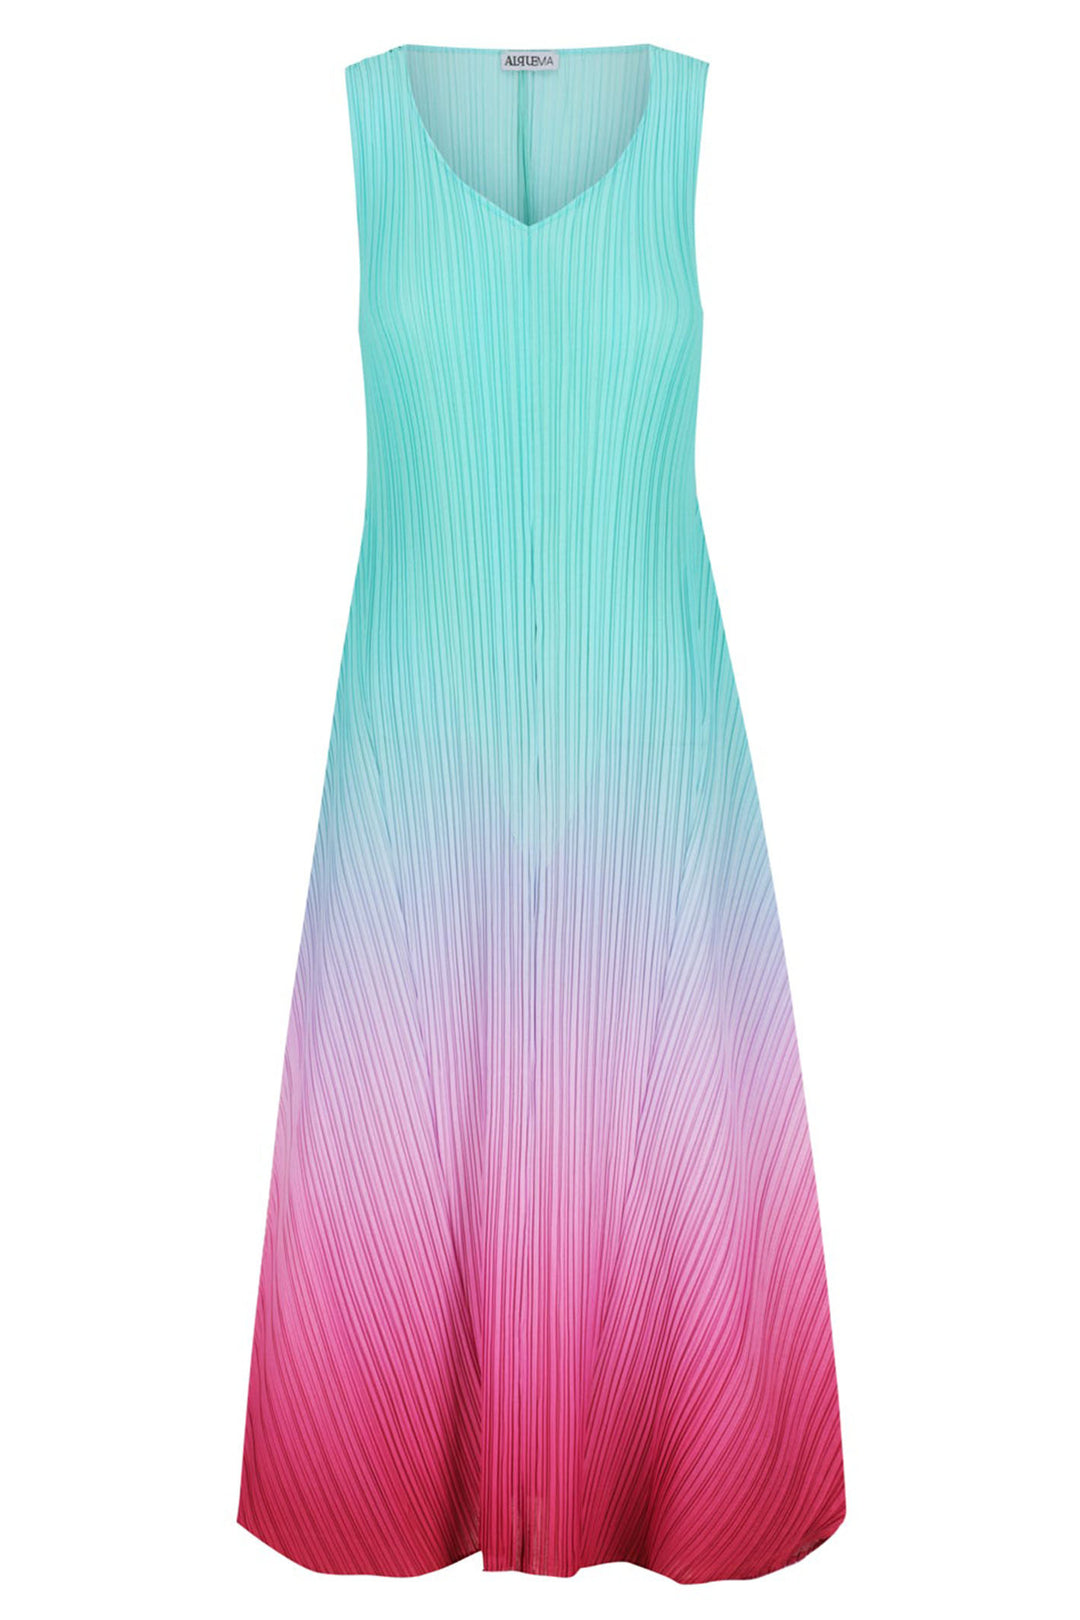 Alquema AD1072L Estrella Blue Pink Calypso Dress - Expperience Boutique